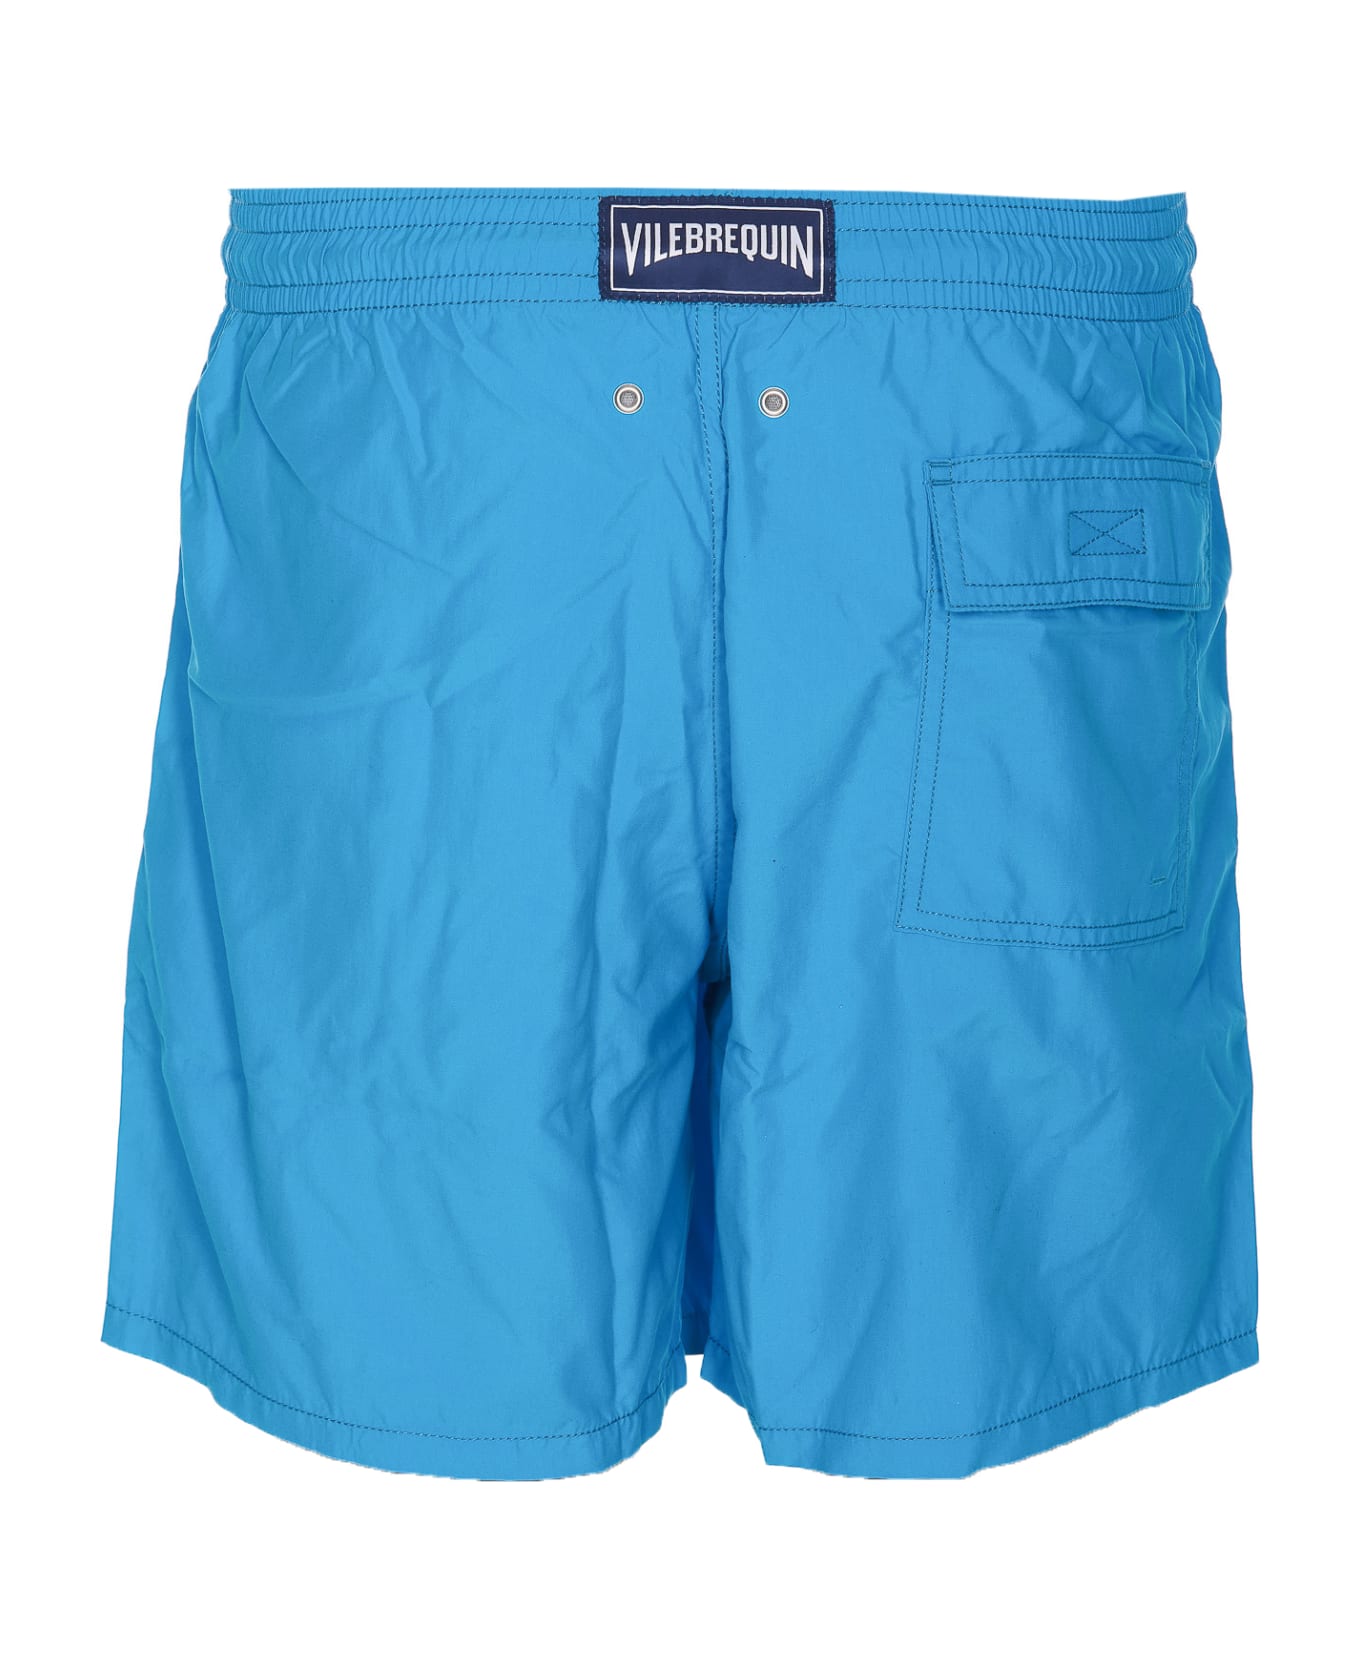 Vilebrequin Solid Swimwear - Blue